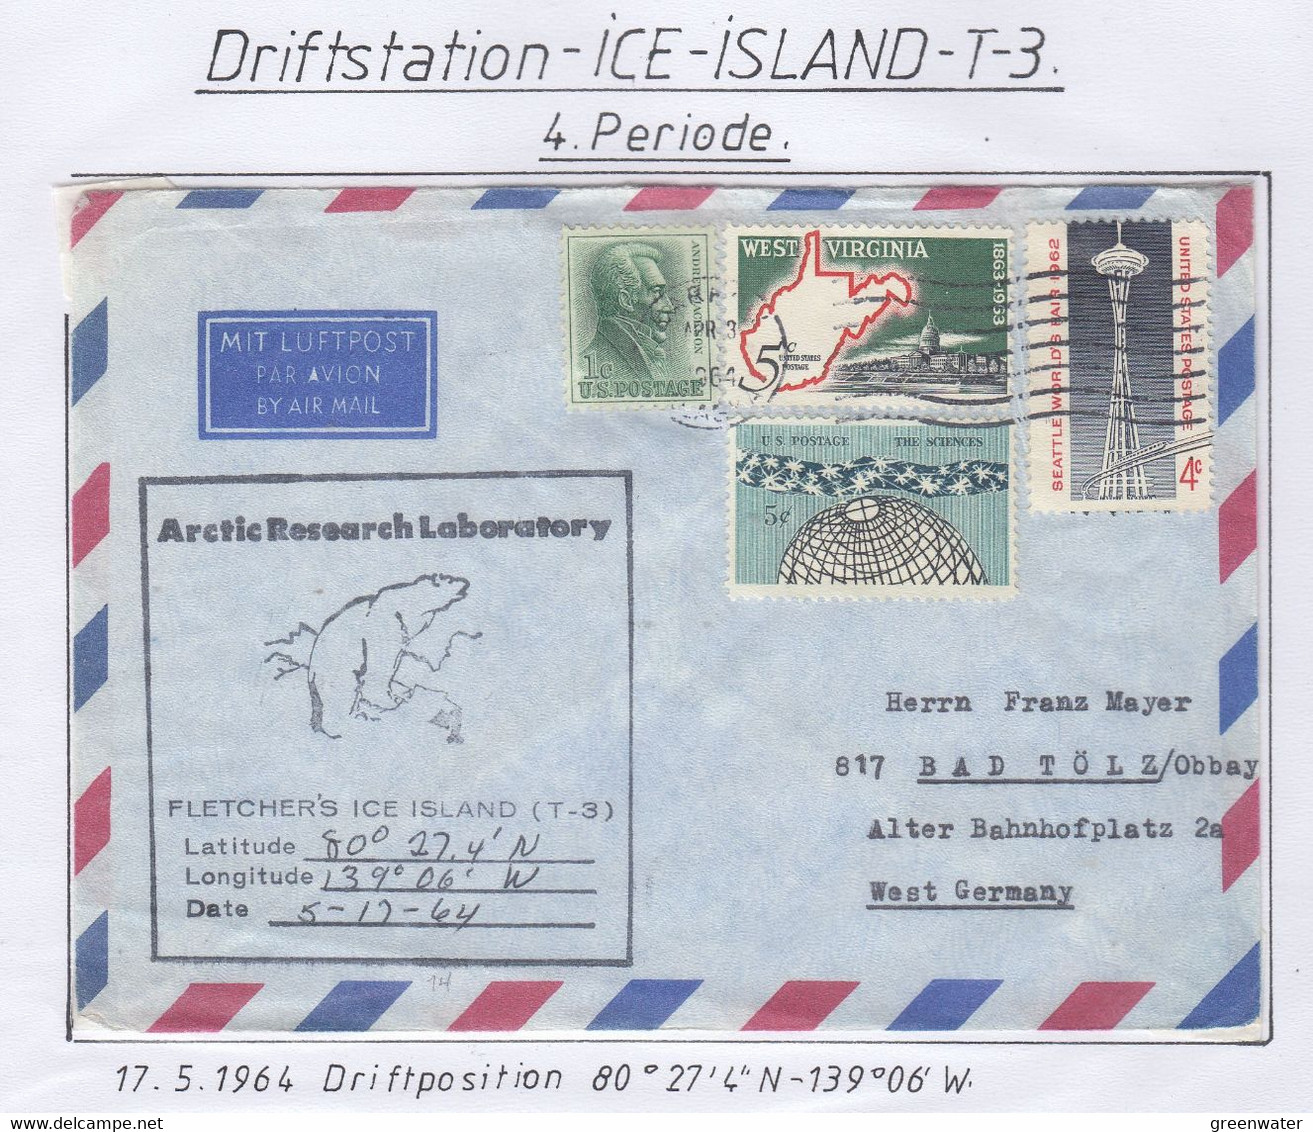 USA Driftstation ICE-ISLAND T-3 Cover Ice Island T-3 5.12.644  (DR115) - Forschungsstationen & Arctic Driftstationen